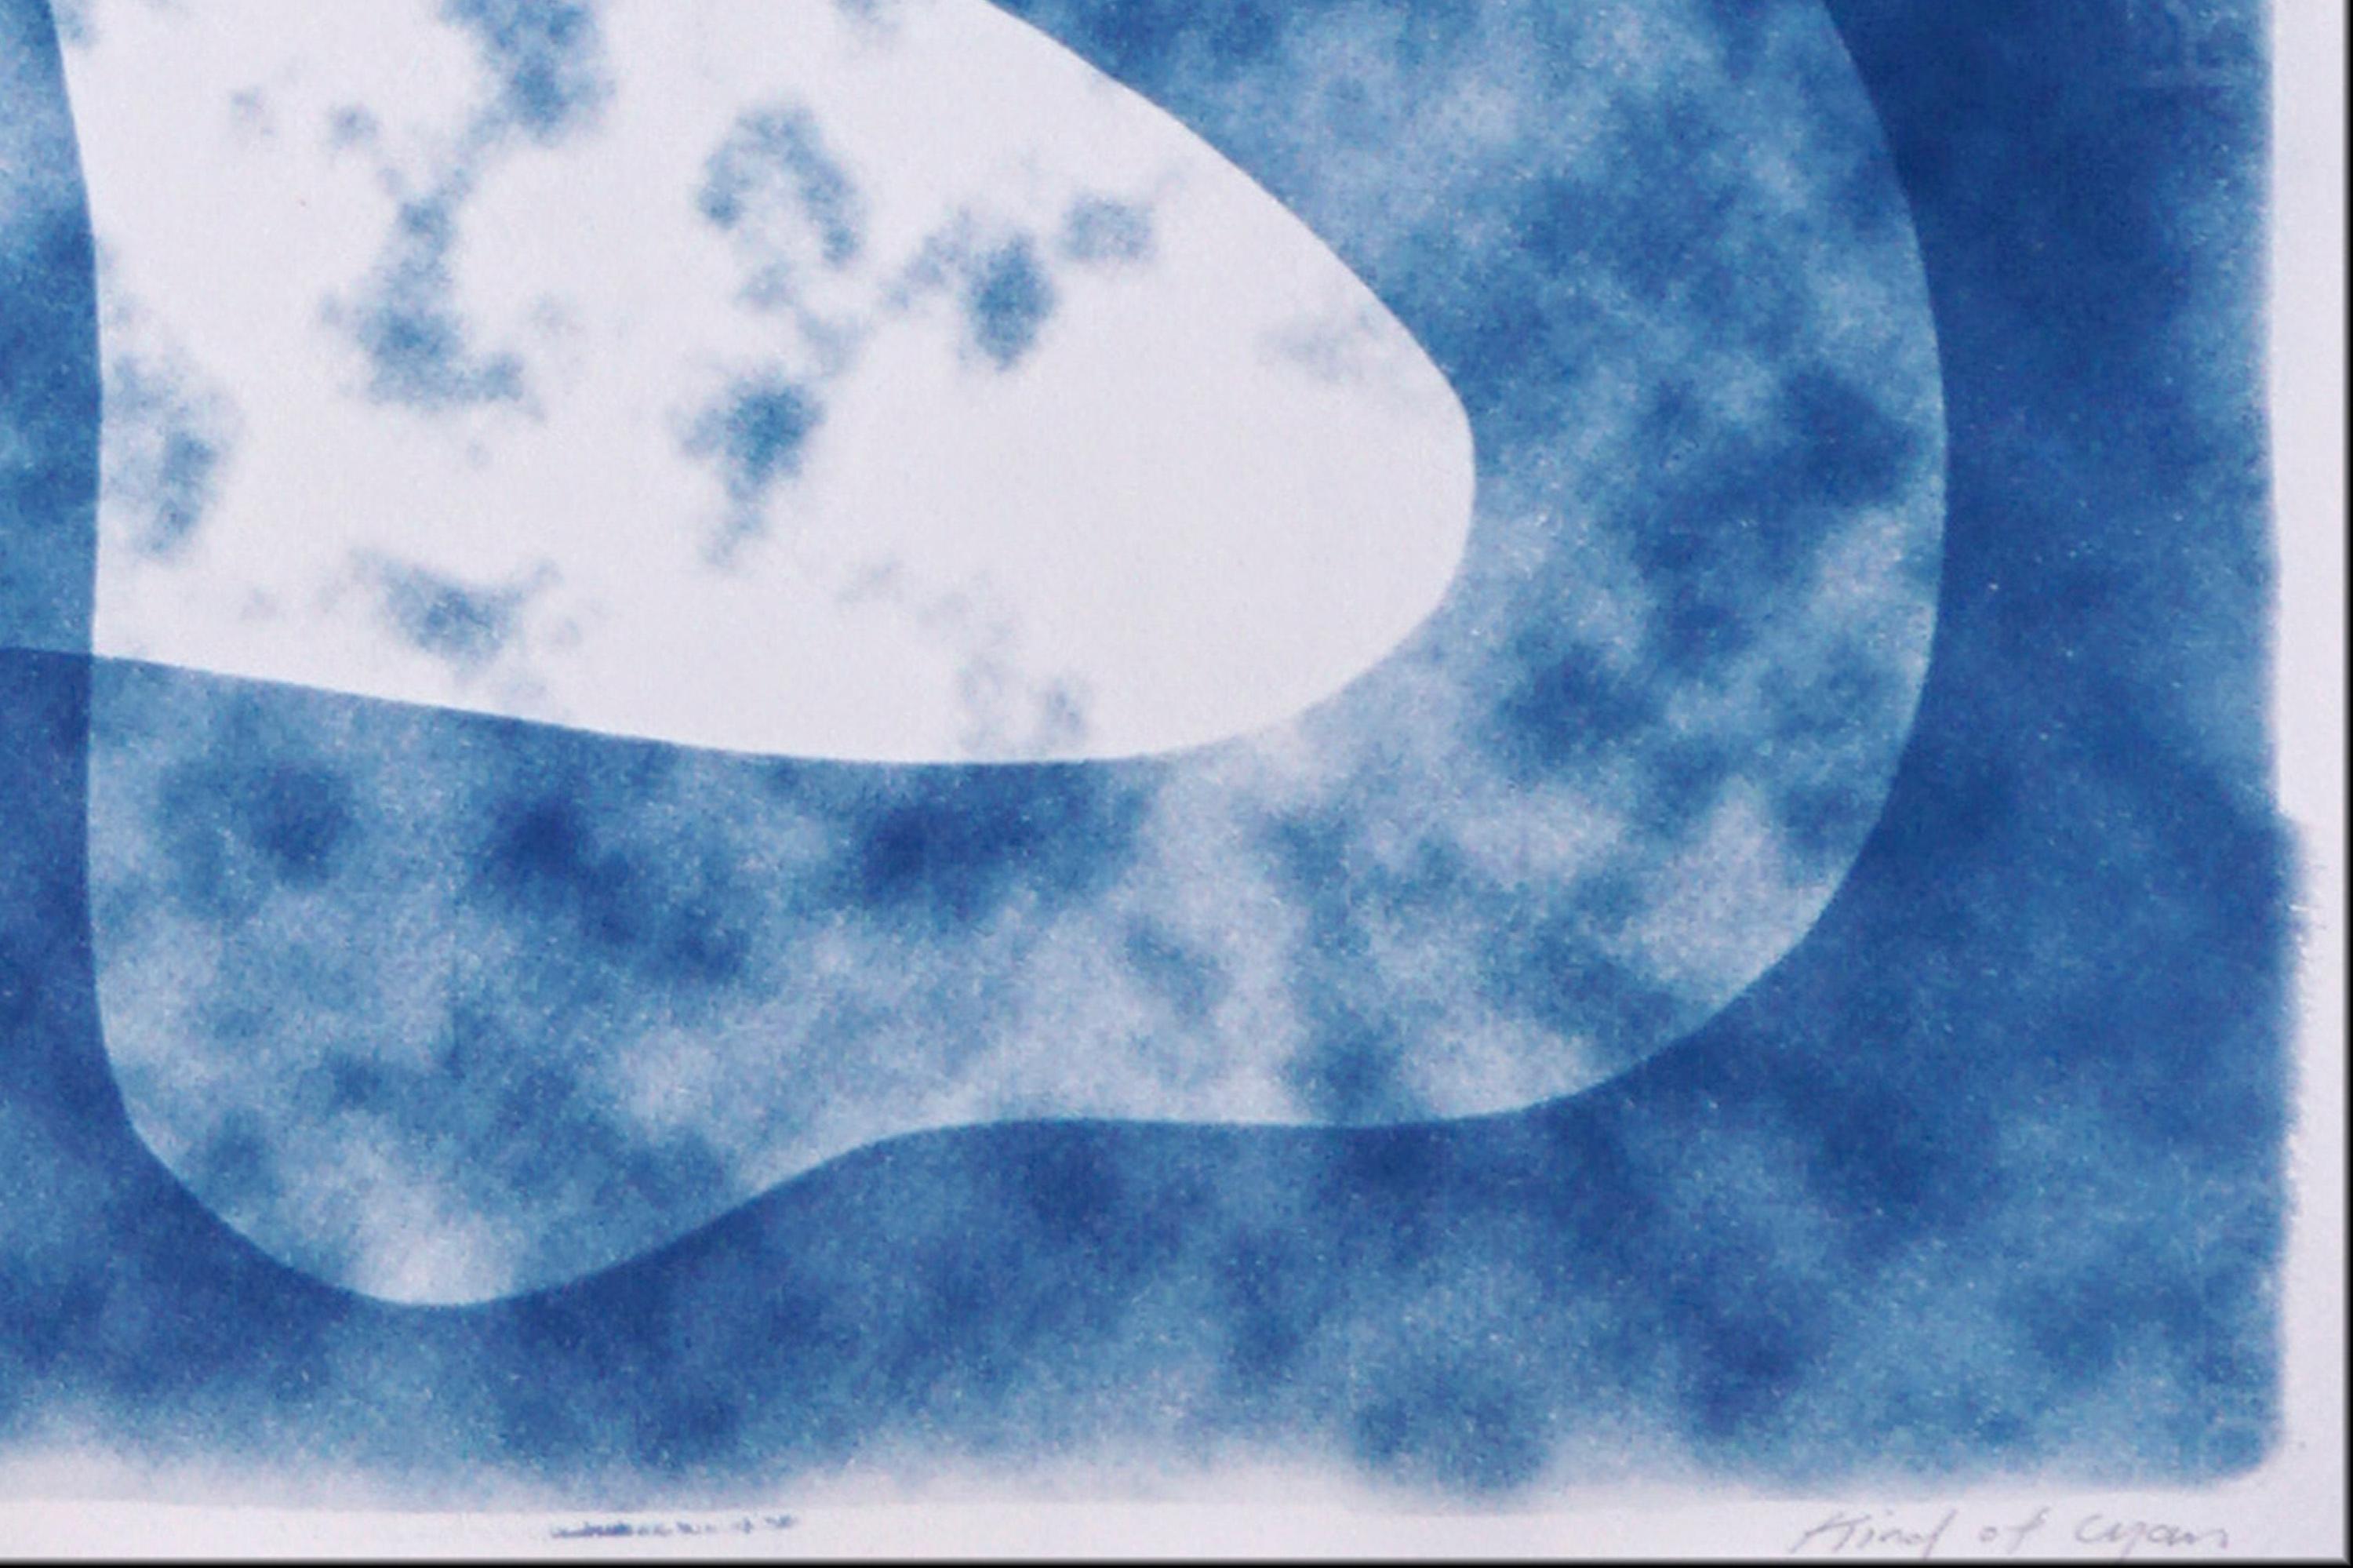 Formes nuages foncés, formes reines modernes du milieu du siècle, transparence bleue et blanche - Abstrait Photograph par Kind of Cyan